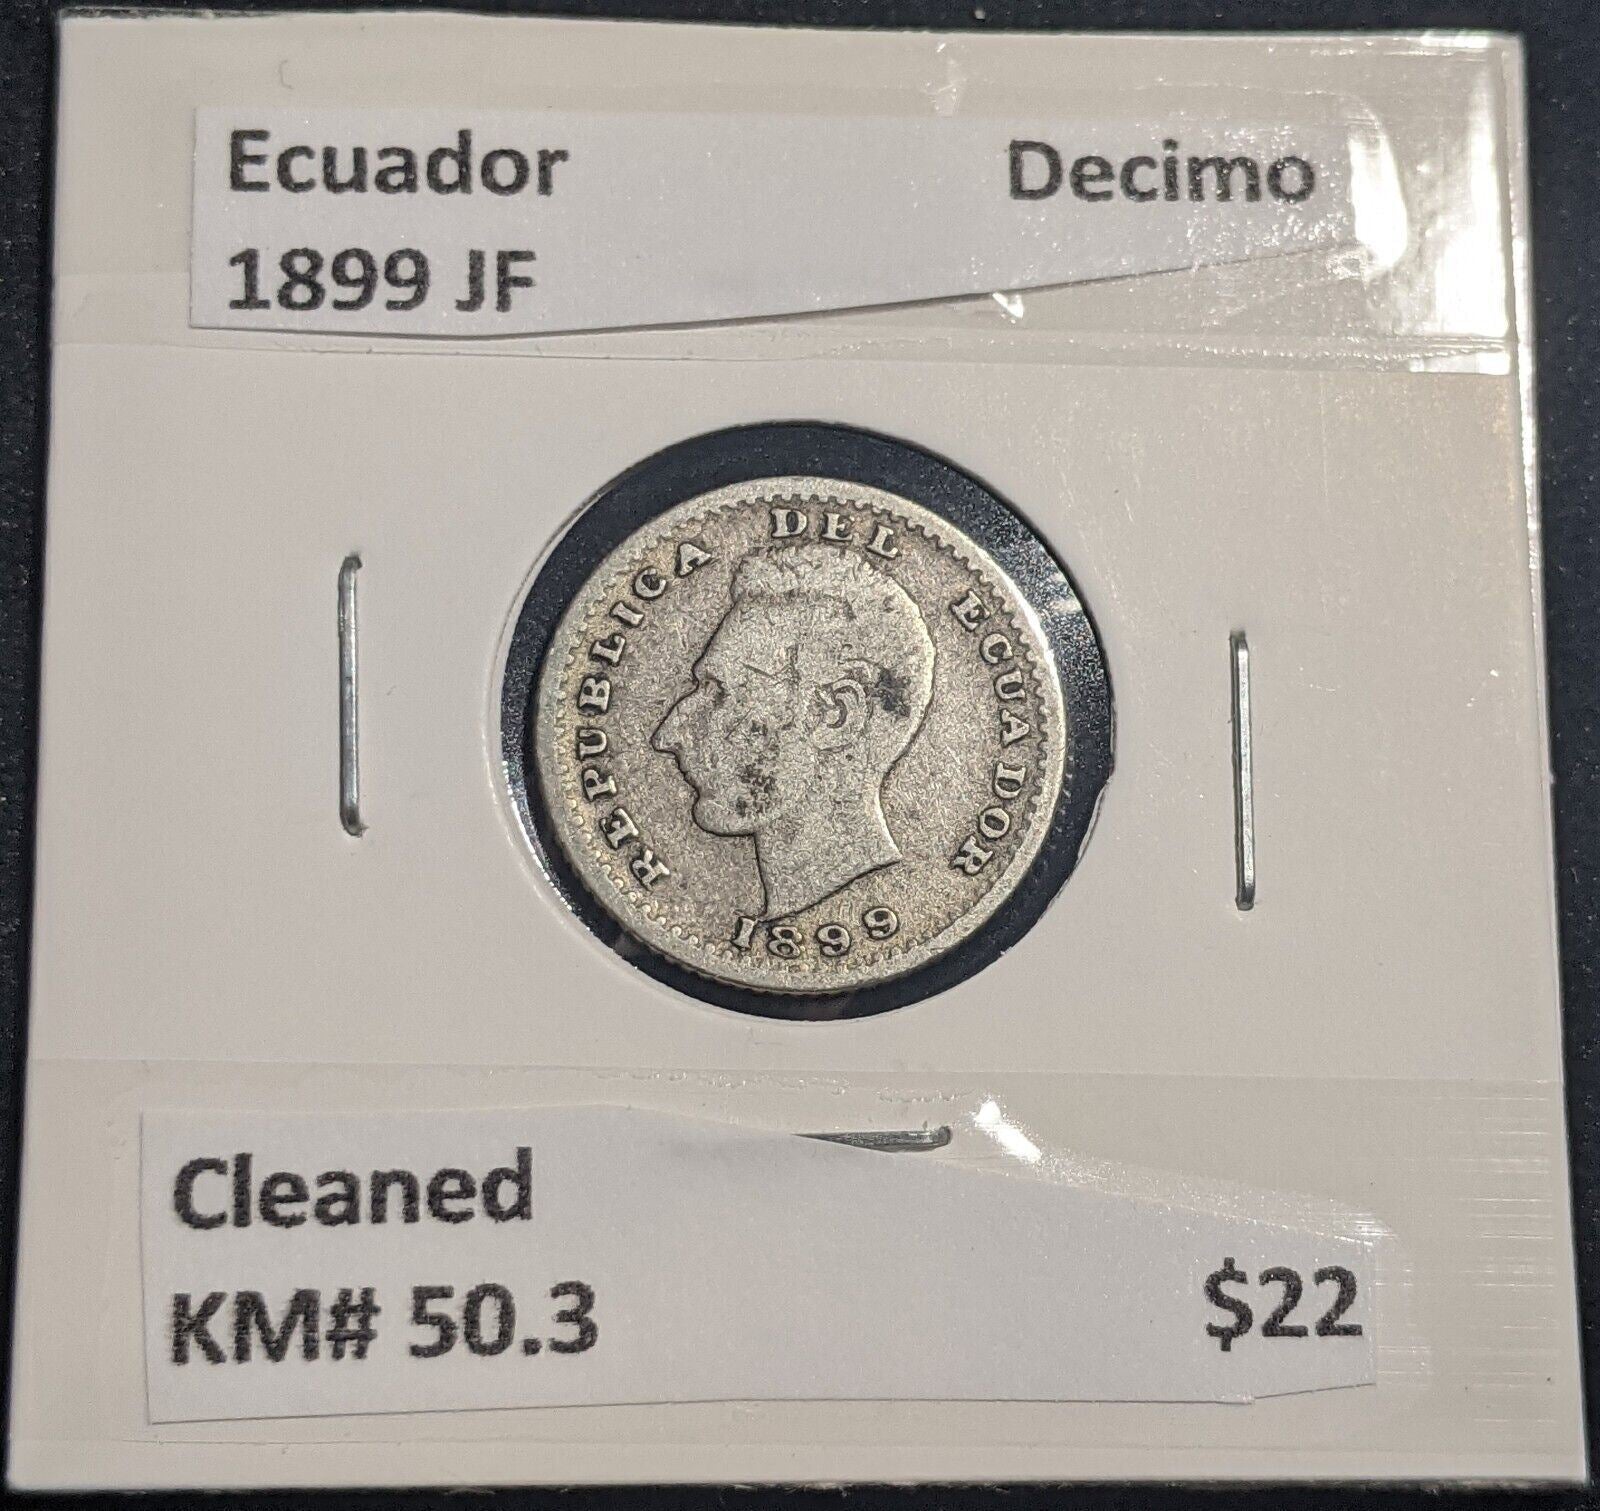 Ecuador 1889 JF Decimo KM# 50.3 Cleaned #934  #19C